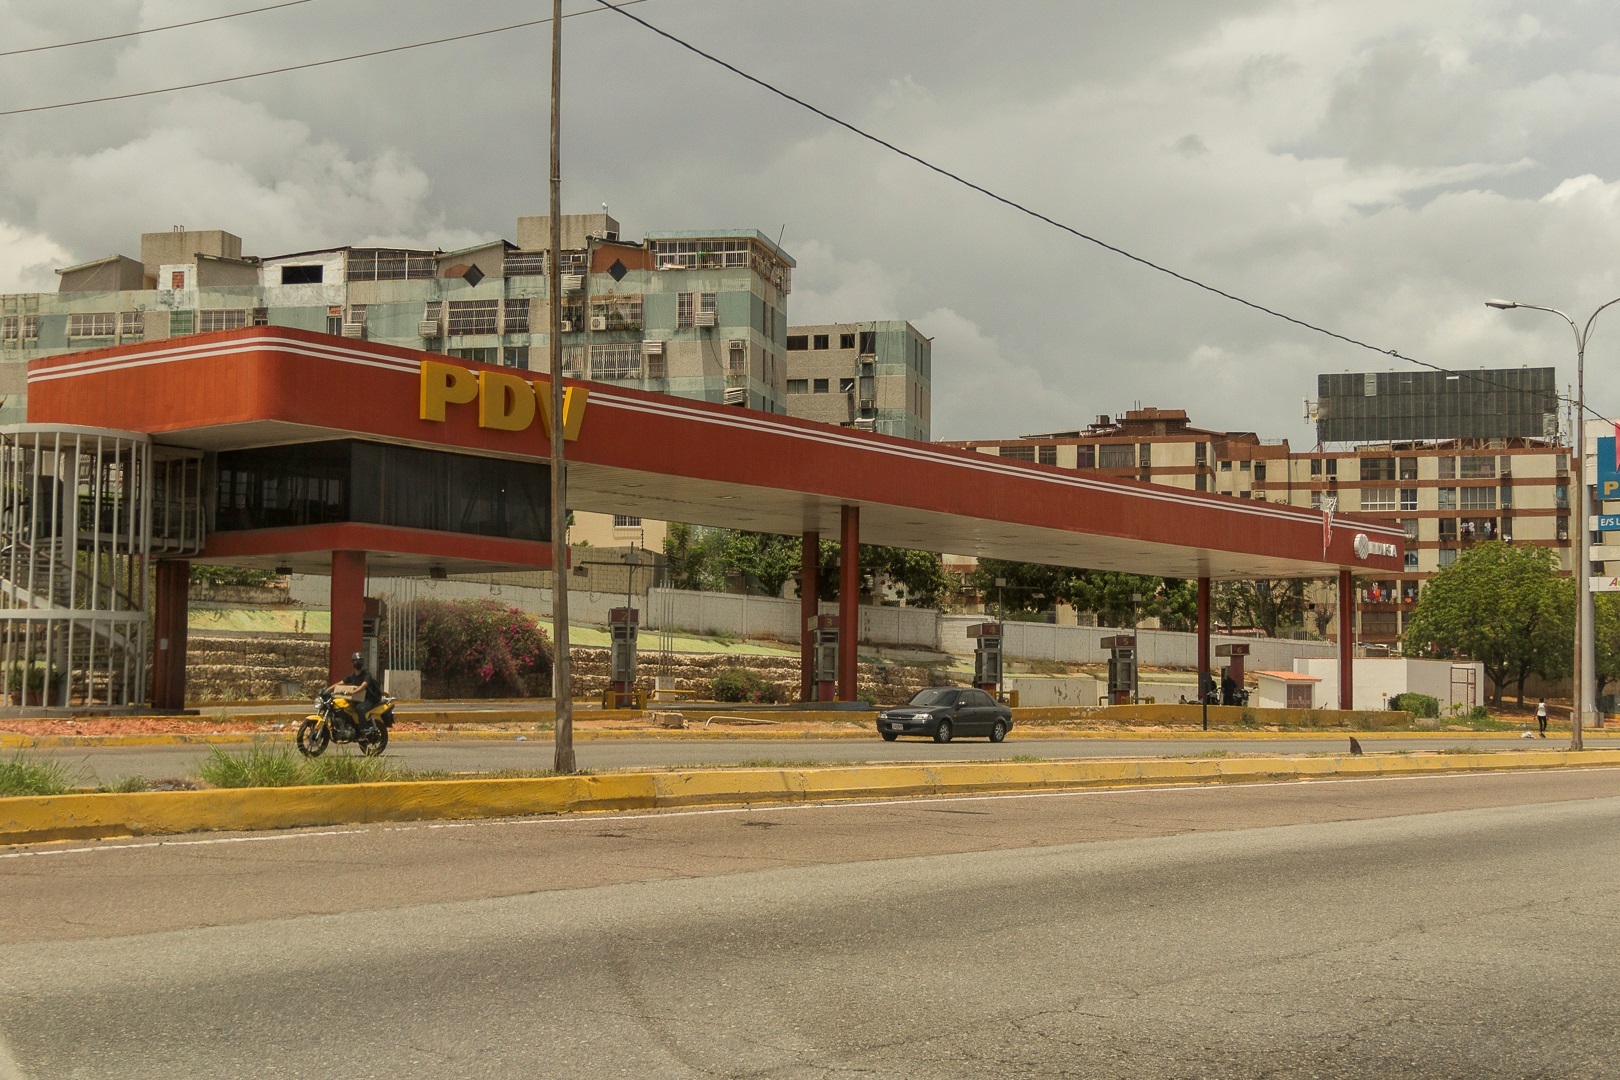 En Achaguas persiste la crisis: No surtirán gasolina en semanas de “cuarentena radical”